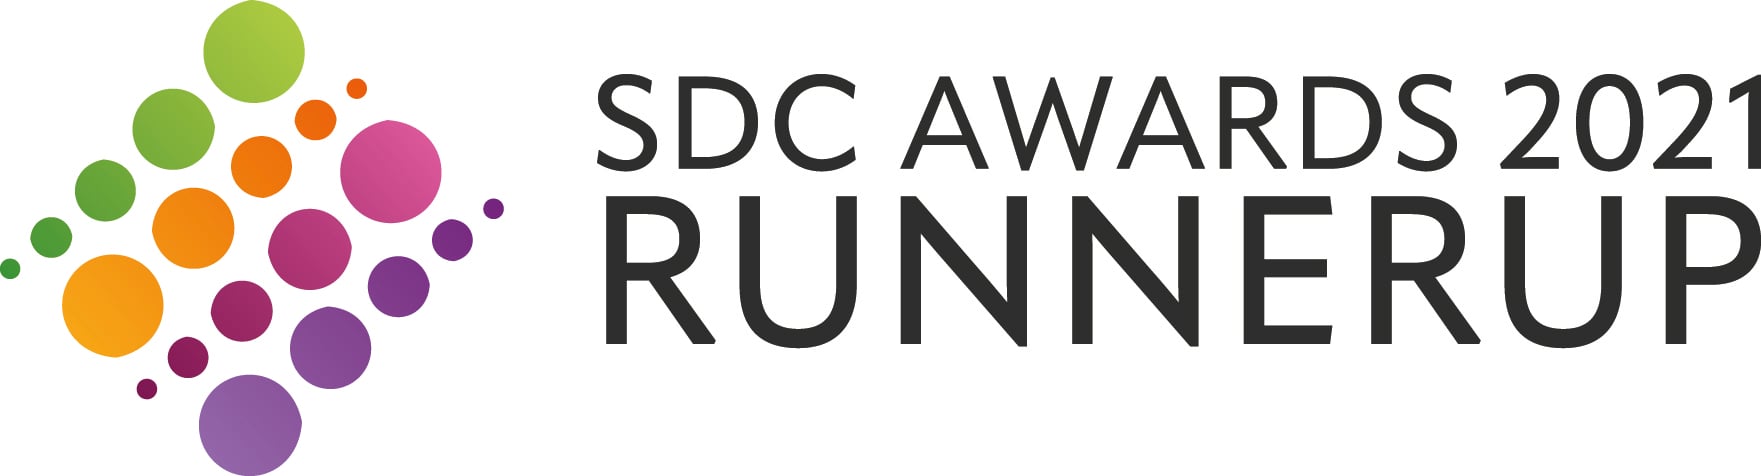 SDC Awards RunnerUp 2021 logo